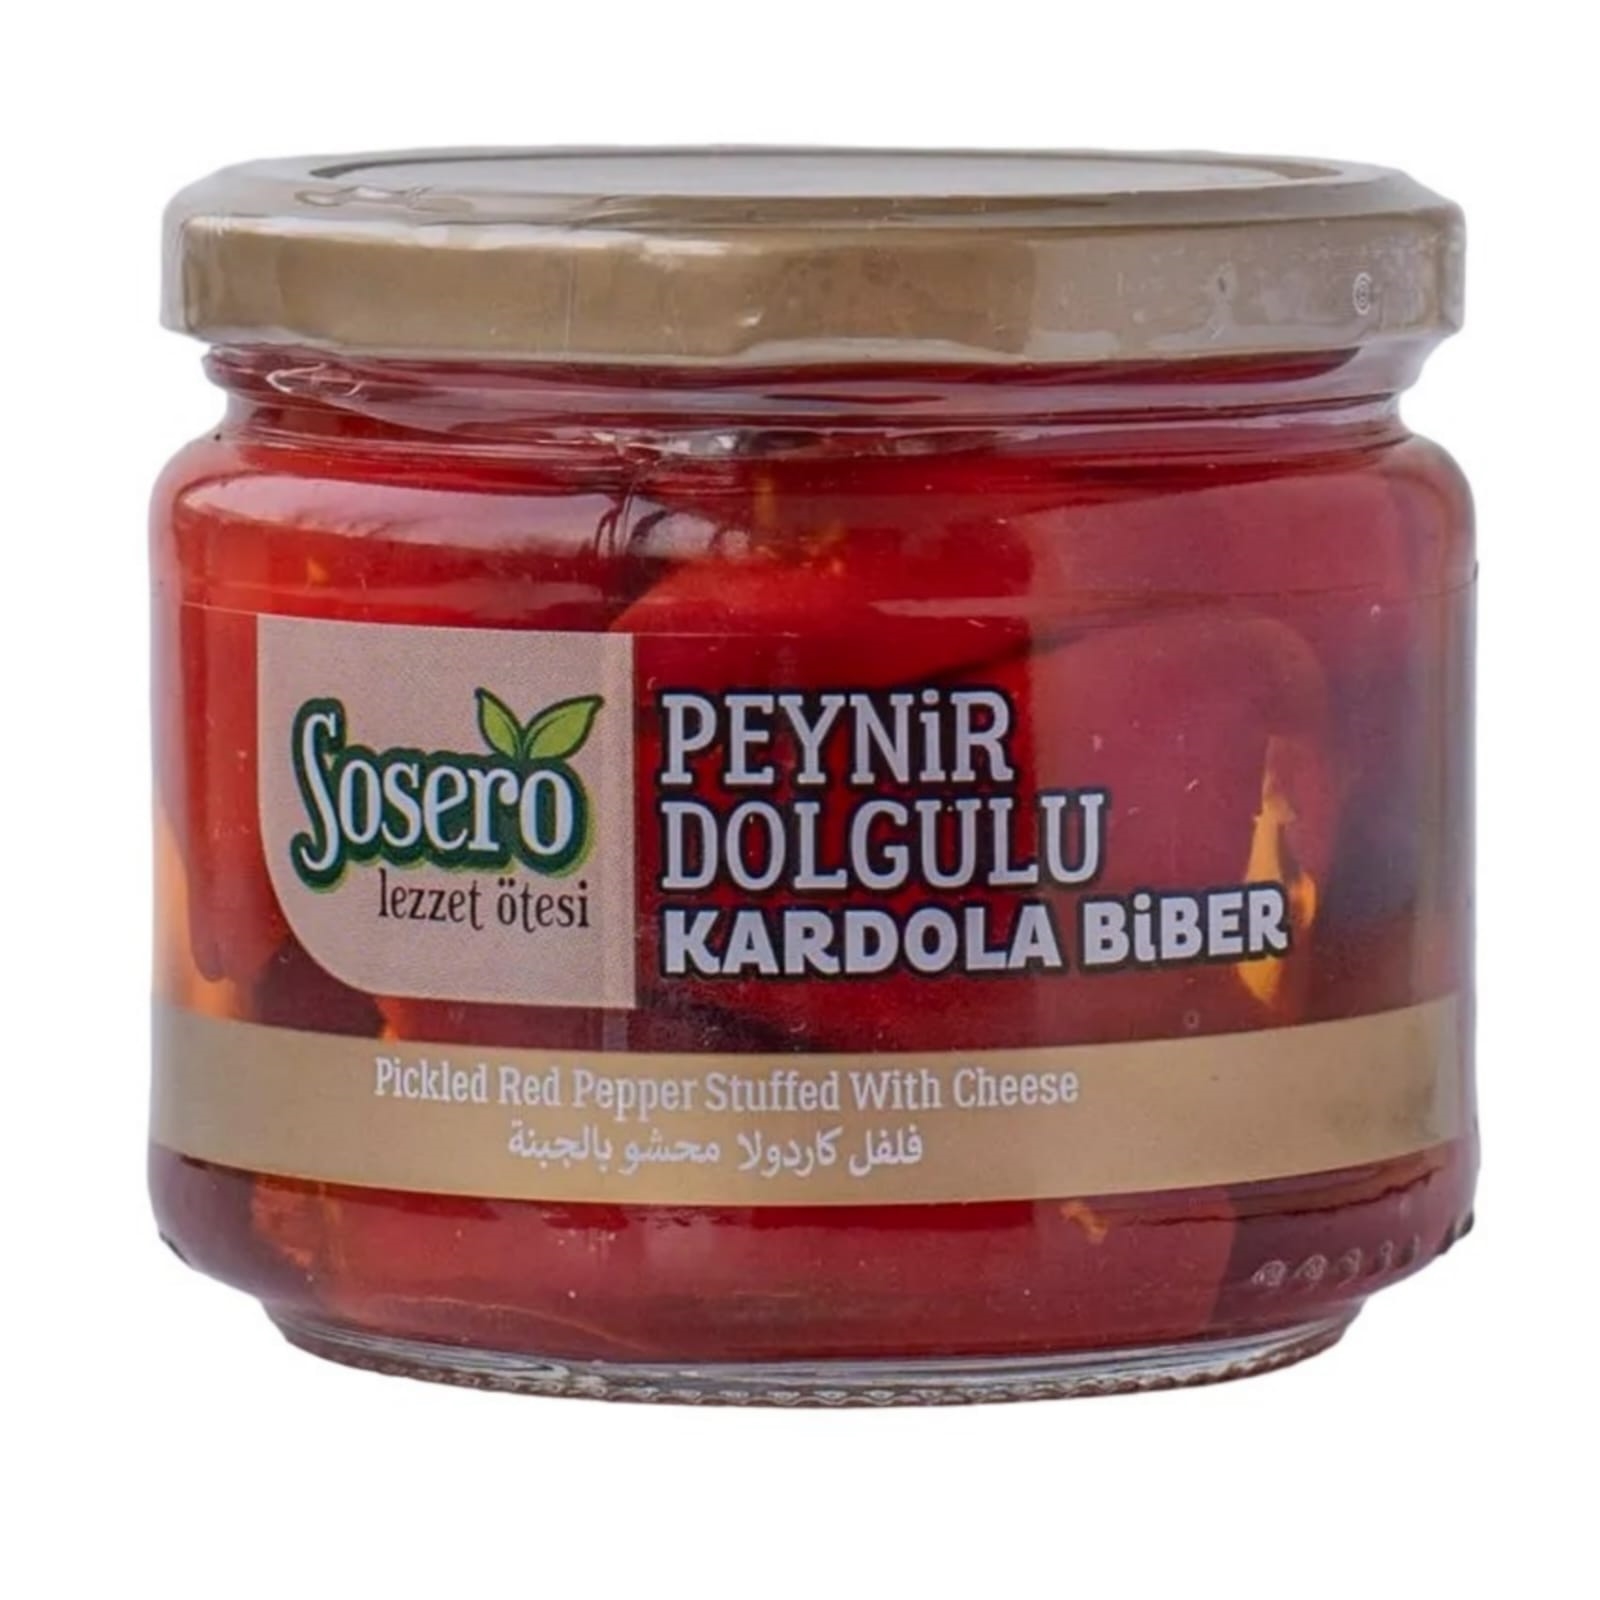 Перец Кардола фаршированный сыром Sosero Kardola Biber, 290 г